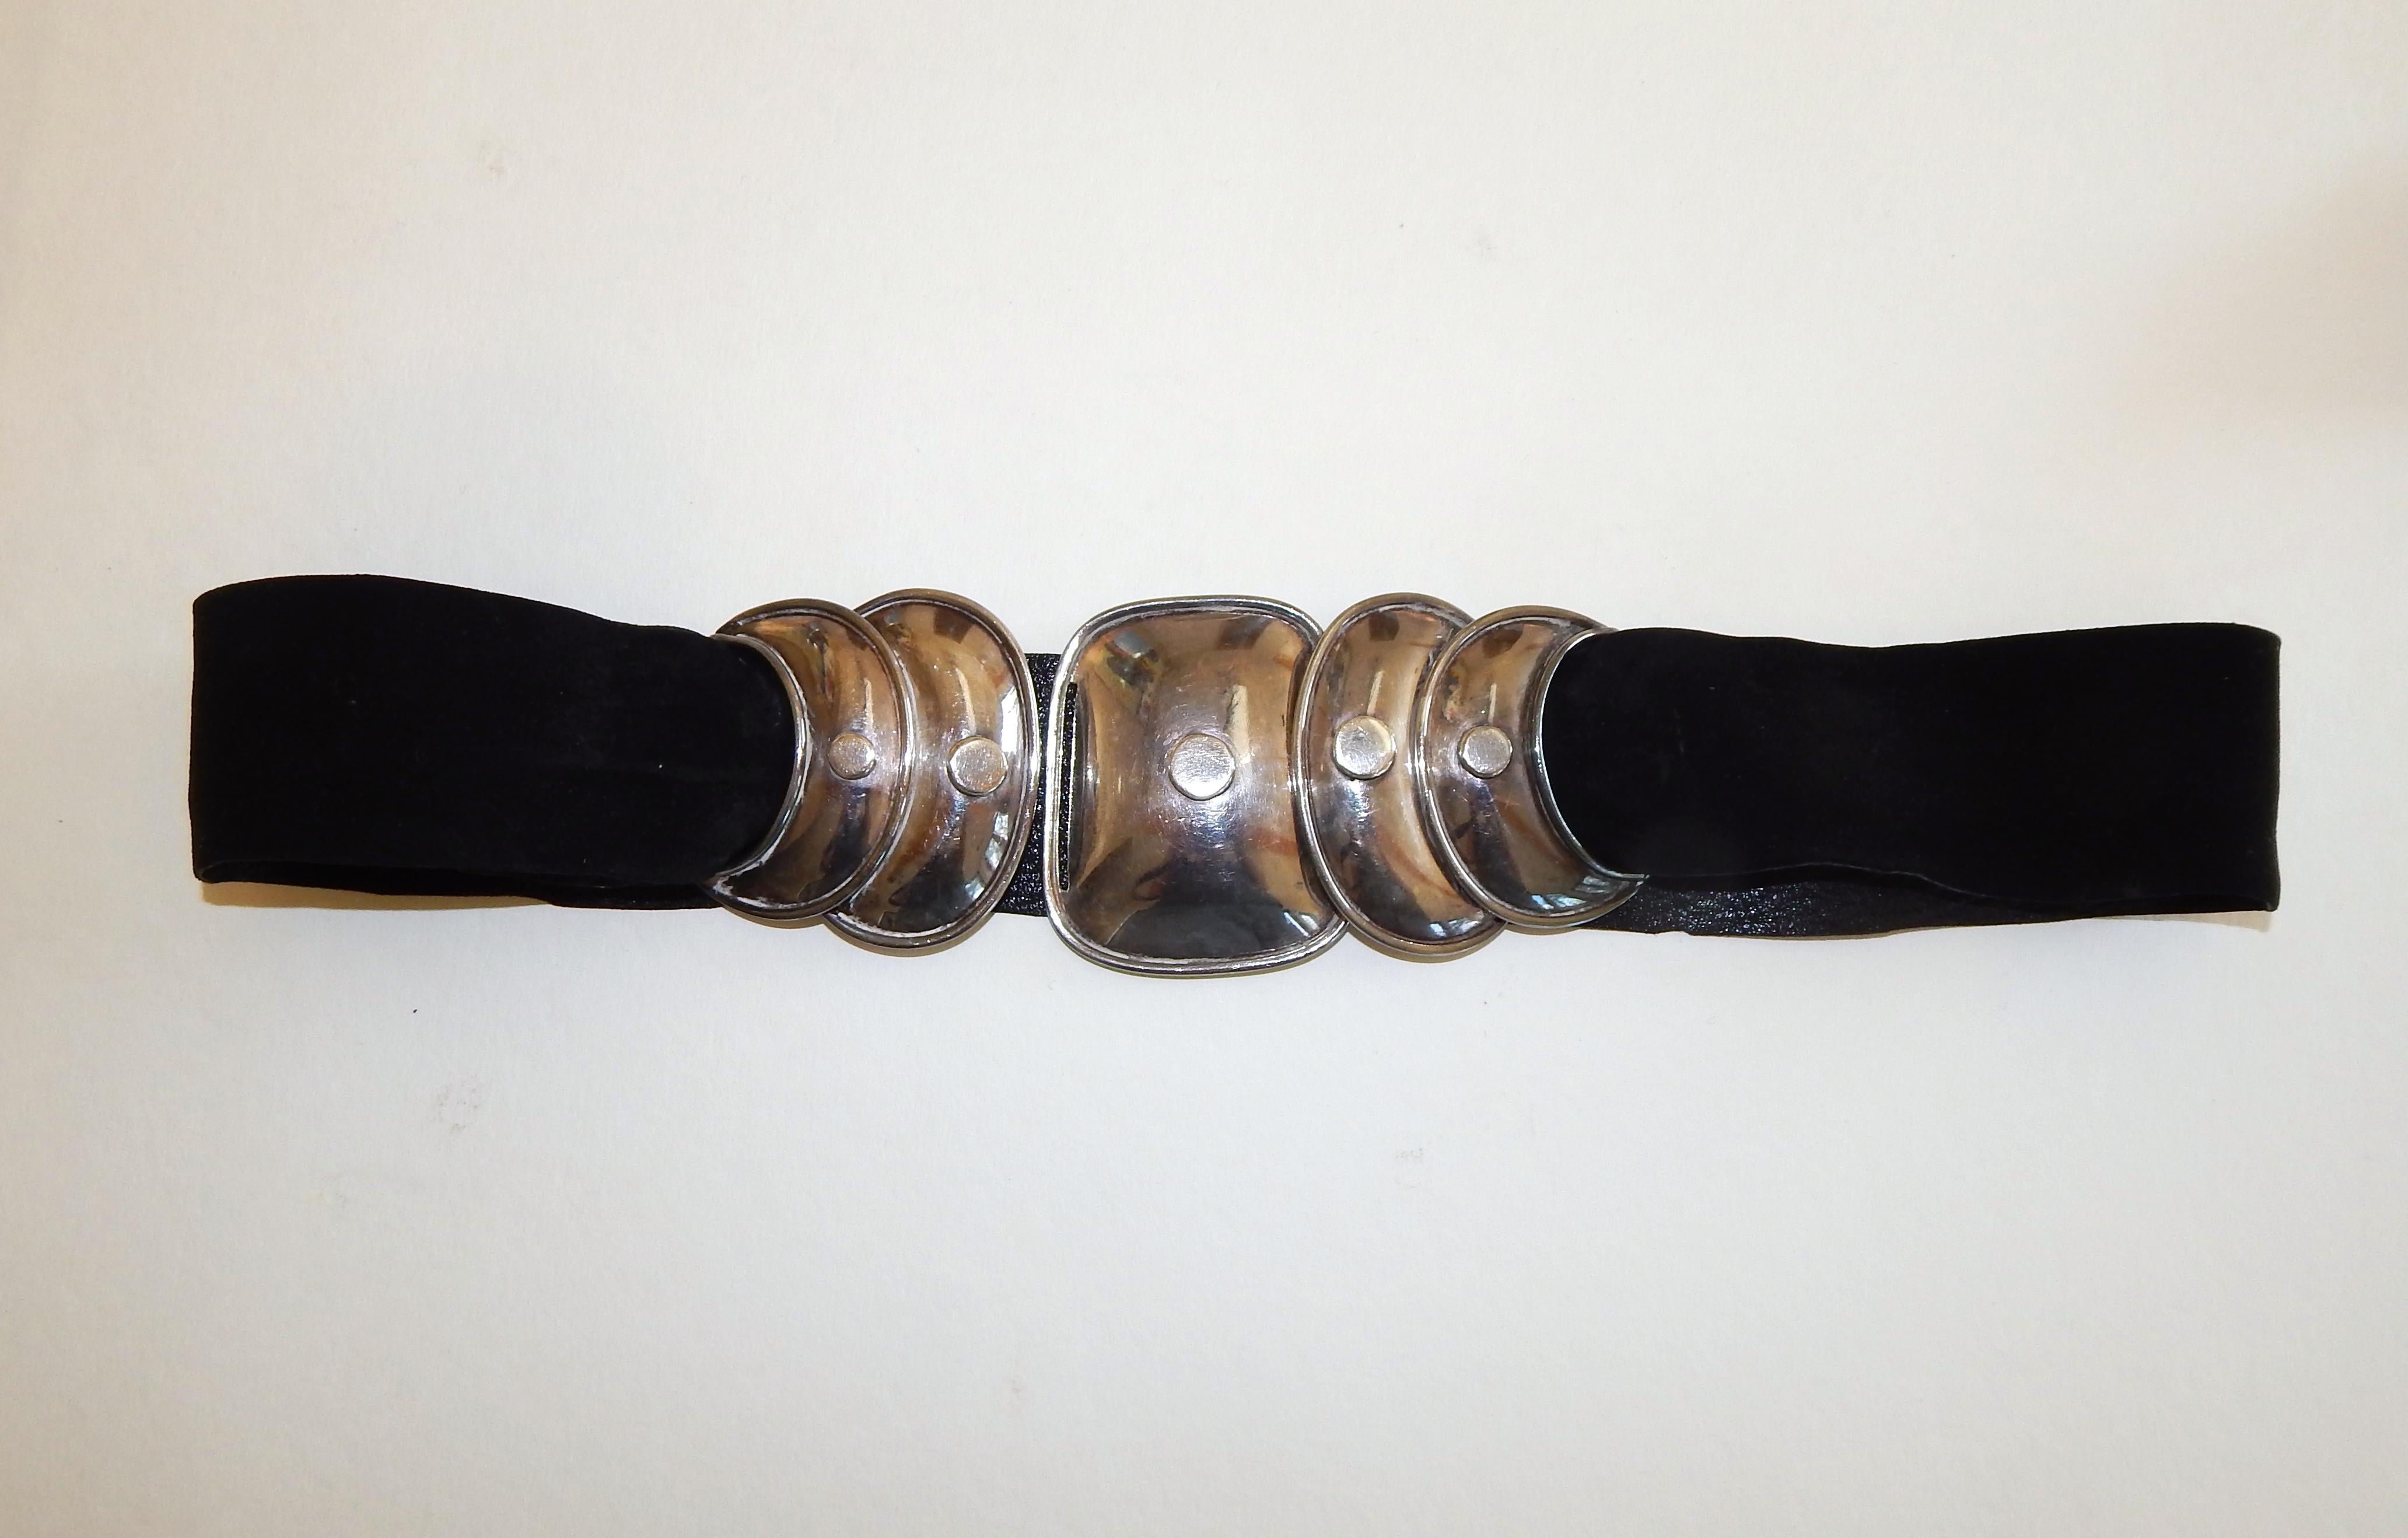 Fabulous Armadillo Design 940 Taxco Sterling Schmuck-Set von Hector Aguilar.
Anmutig und solide. Gürtel und Halskette sind auf dem Original-Samt aufgereiht.
Set besteht aus: Gürtel, Halskette, Armband und Ohrringe.
In ausgezeichnetem